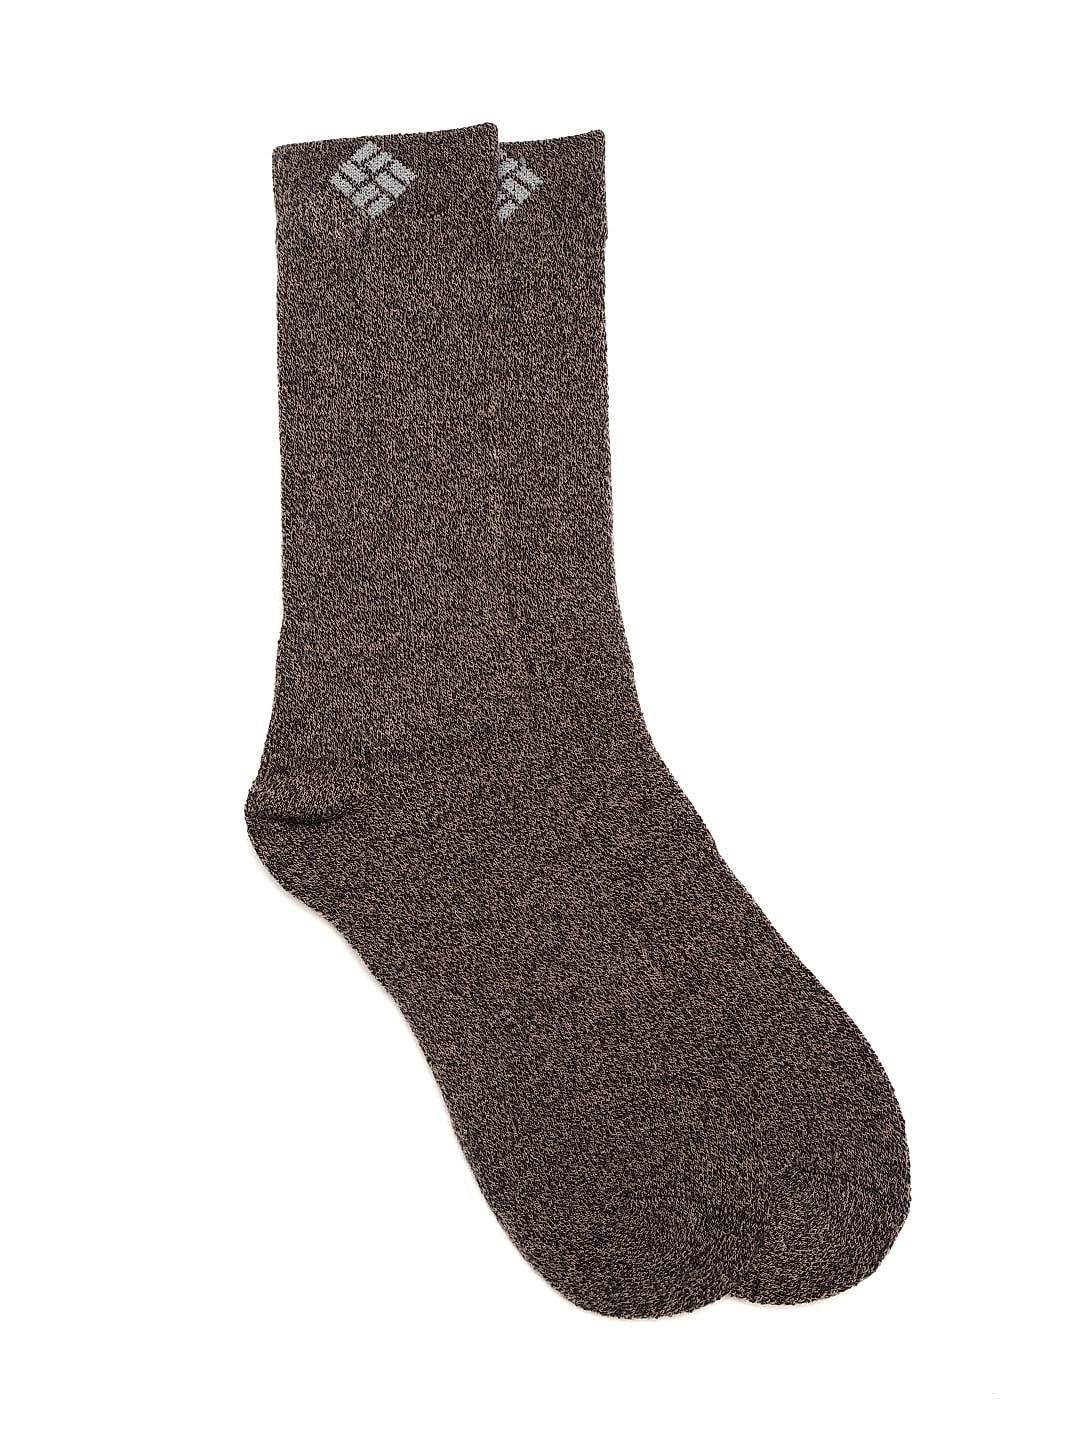 Buy Thermal Socks For Women Online